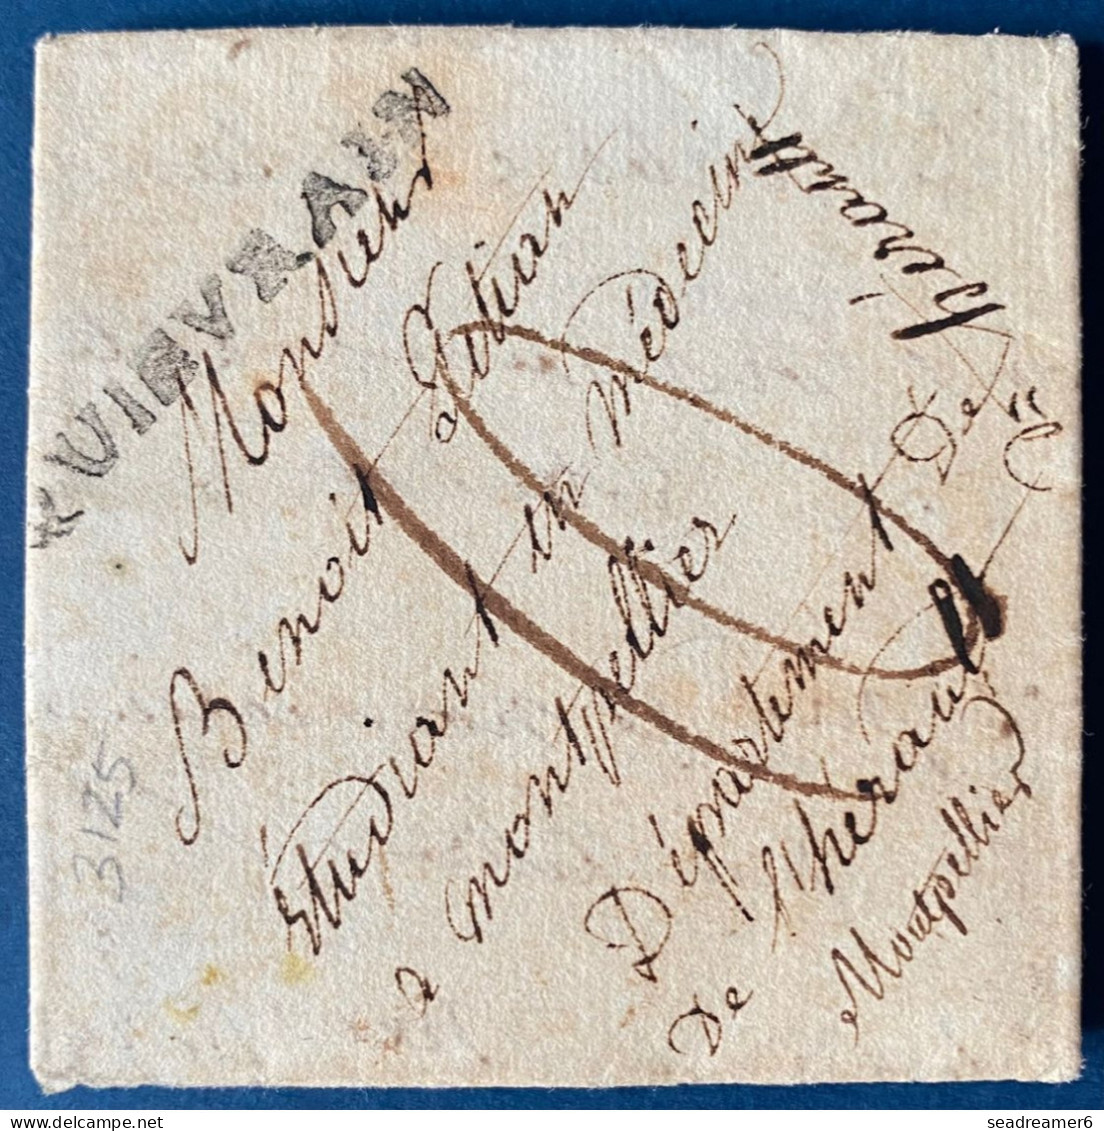 BELGIQUE Lettre De POMMEROEUL Du 28 MARS 1815 Marque QUIEVRAIN 42 X 4 Mm (HT Ind 30) Pour MONTPELLIER + Taxe 10 RRR - 1814-1815 (Gouv. Général De La Belgique)